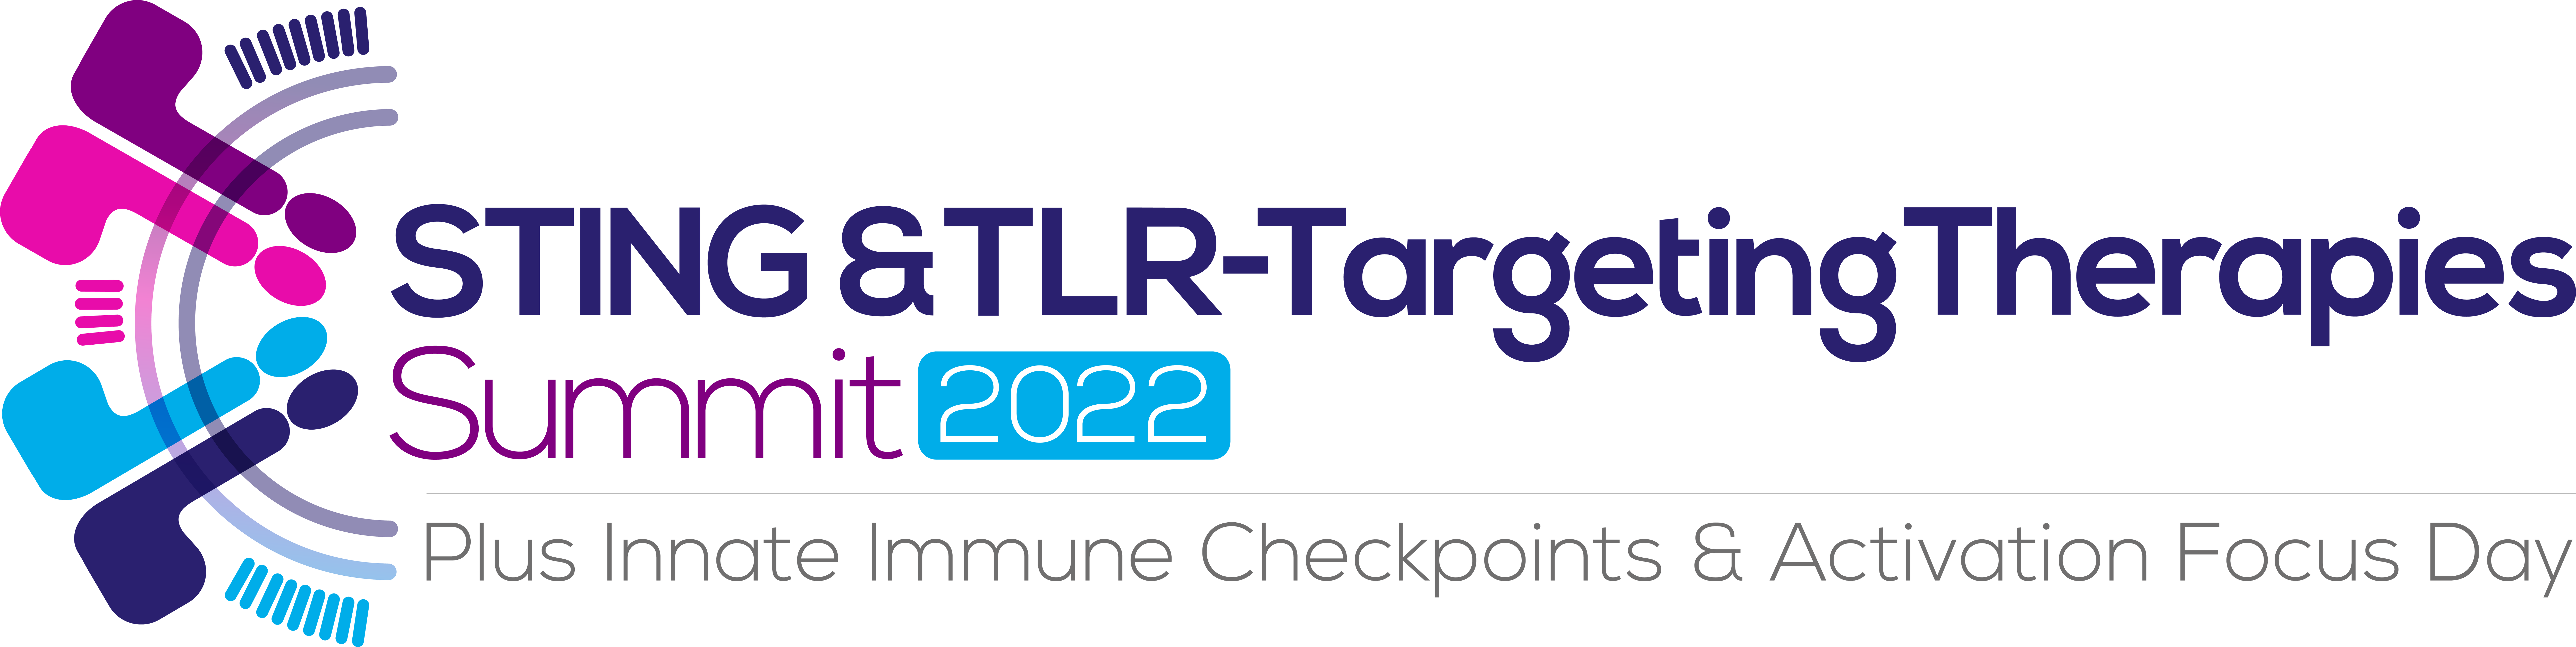 HW220111 STING & TLR-Targeting Therapies 2022 logo Strap